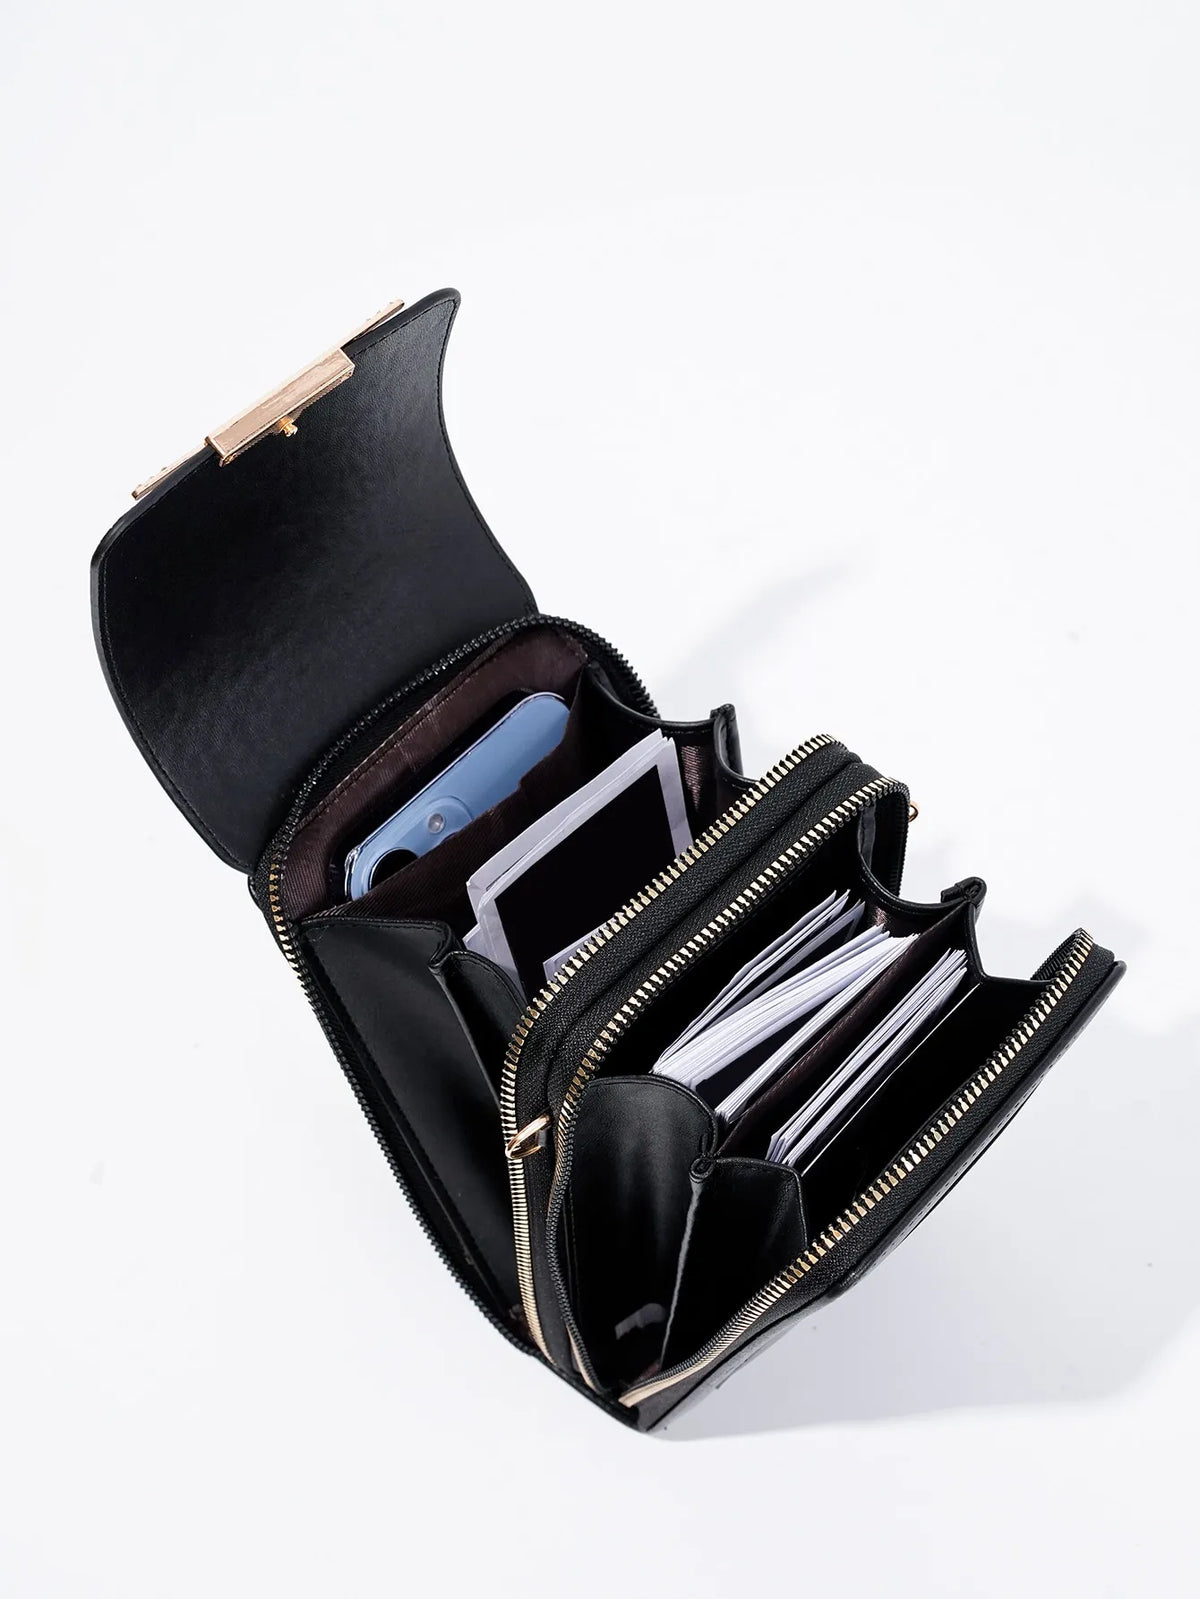 Metal phone wallet